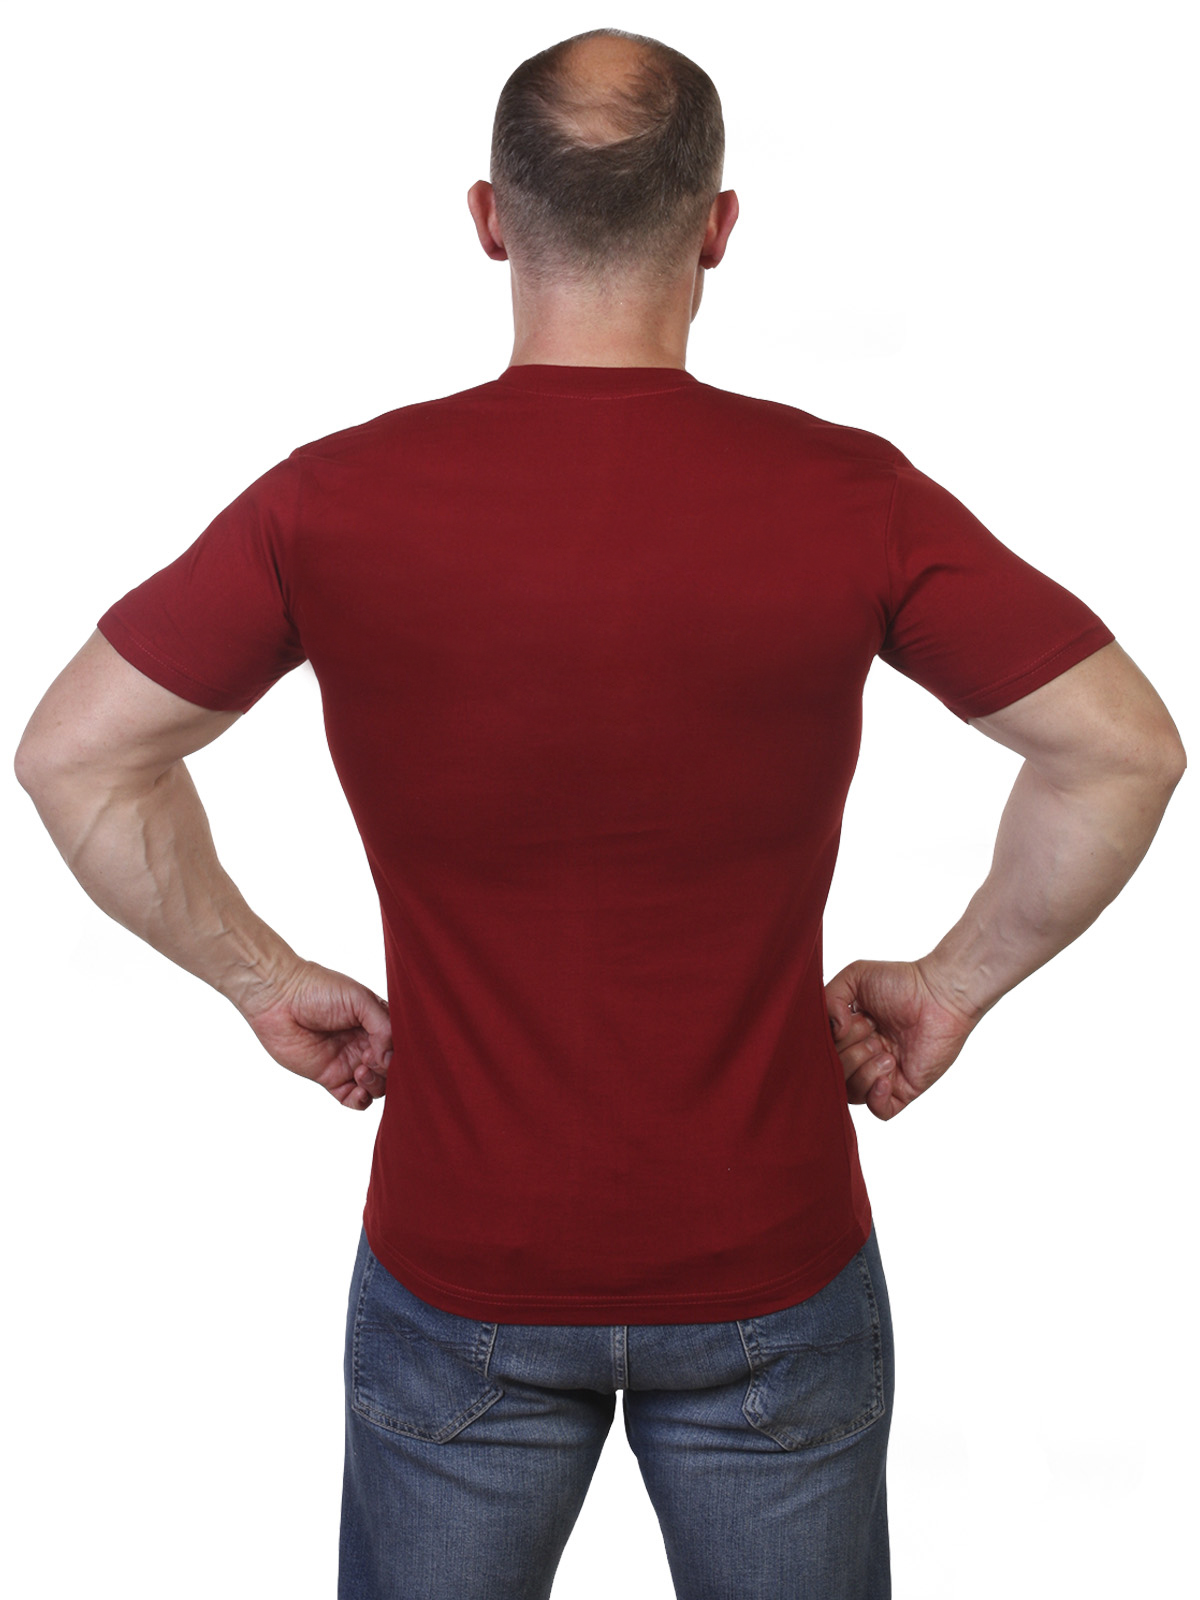 Краповая мужская футболка с символикой ГСВГ 